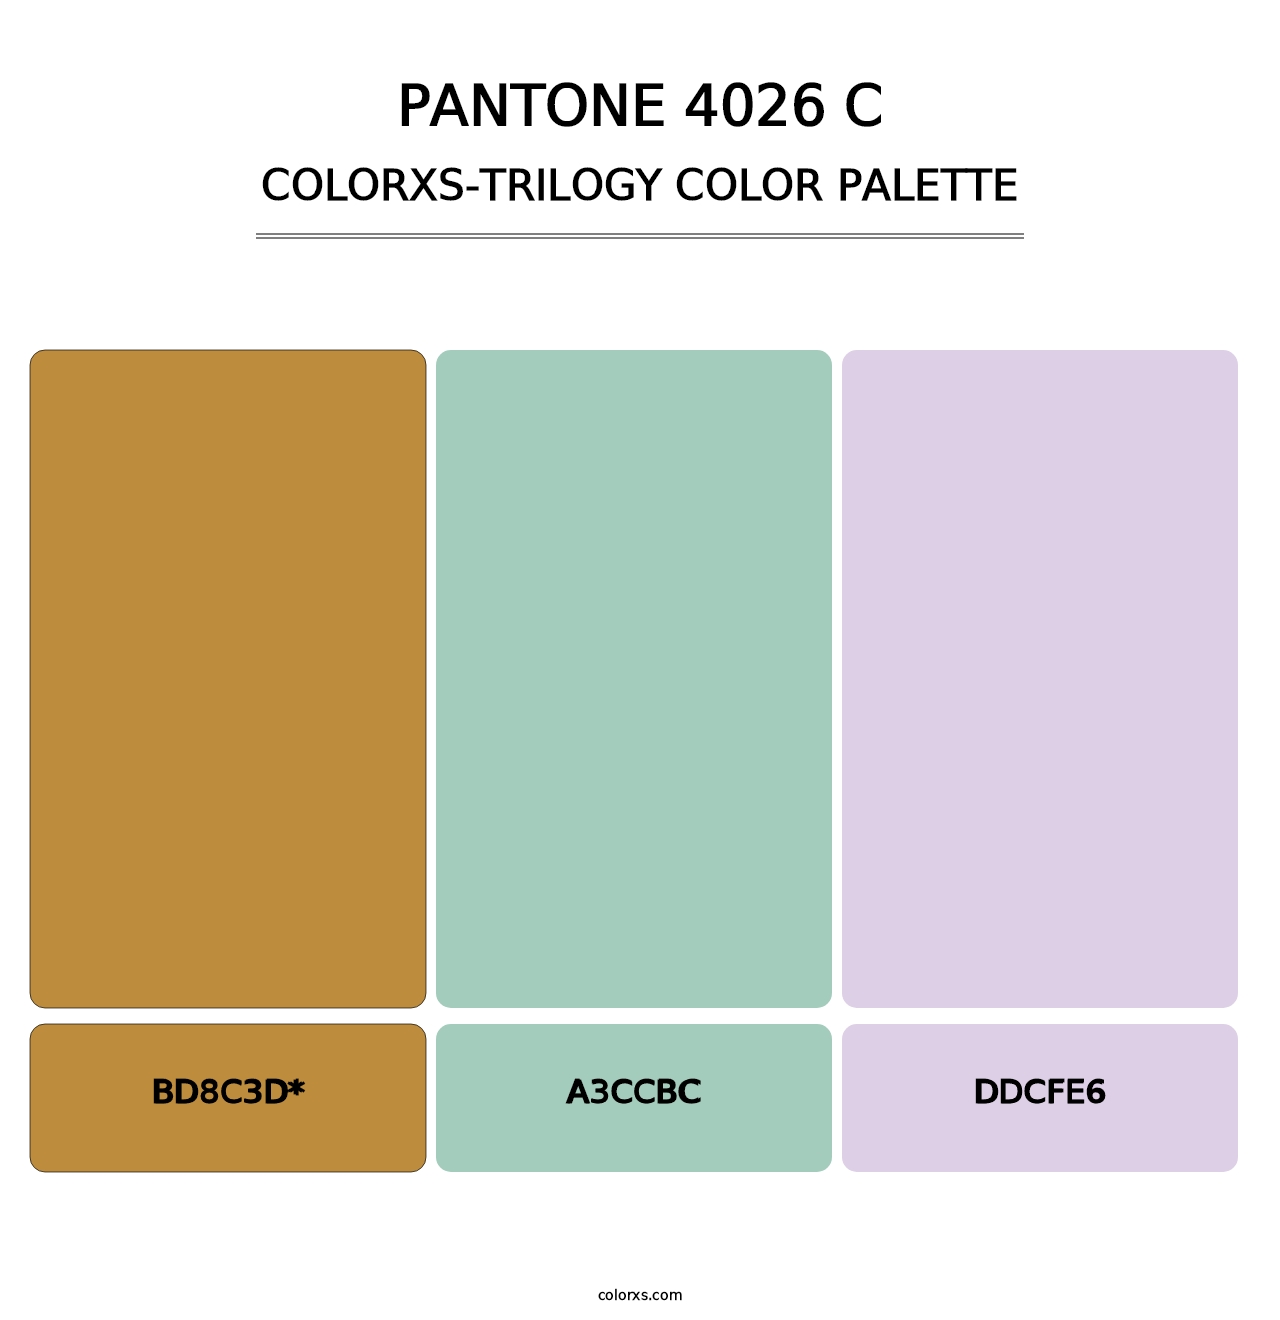 PANTONE 4026 C - Colorxs Trilogy Palette